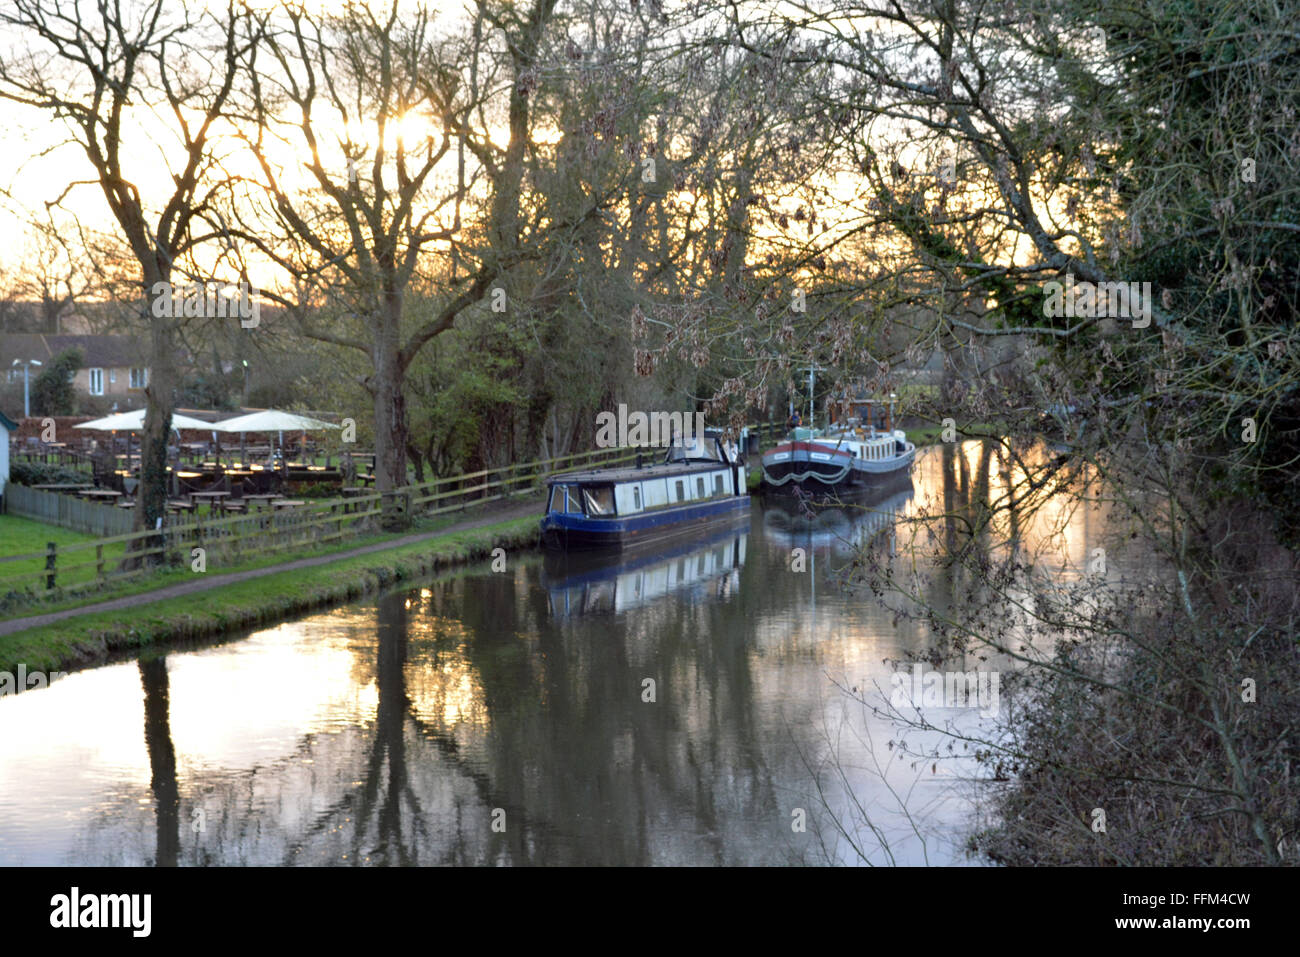 Canal qui coule avec un beau coucher de soleil derrière l'homme rusé, Burghfield, Reading, Berkshire, Royaume-Uni. Charles Dye / Alamy Live News Banque D'Images